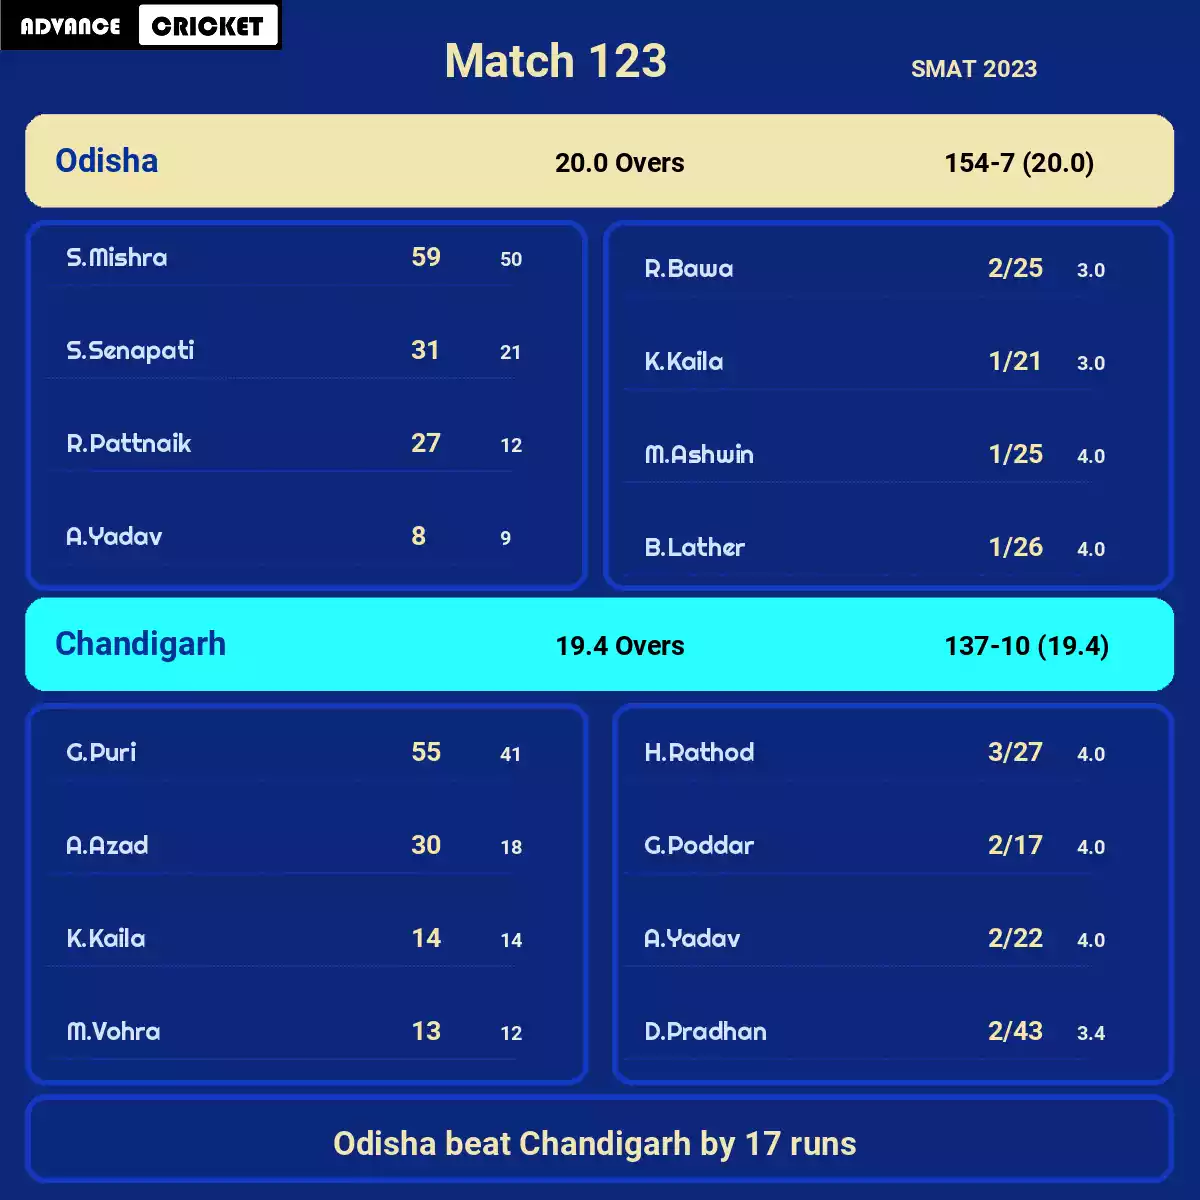 CHN vs ODS Match 123 SMAT 2023